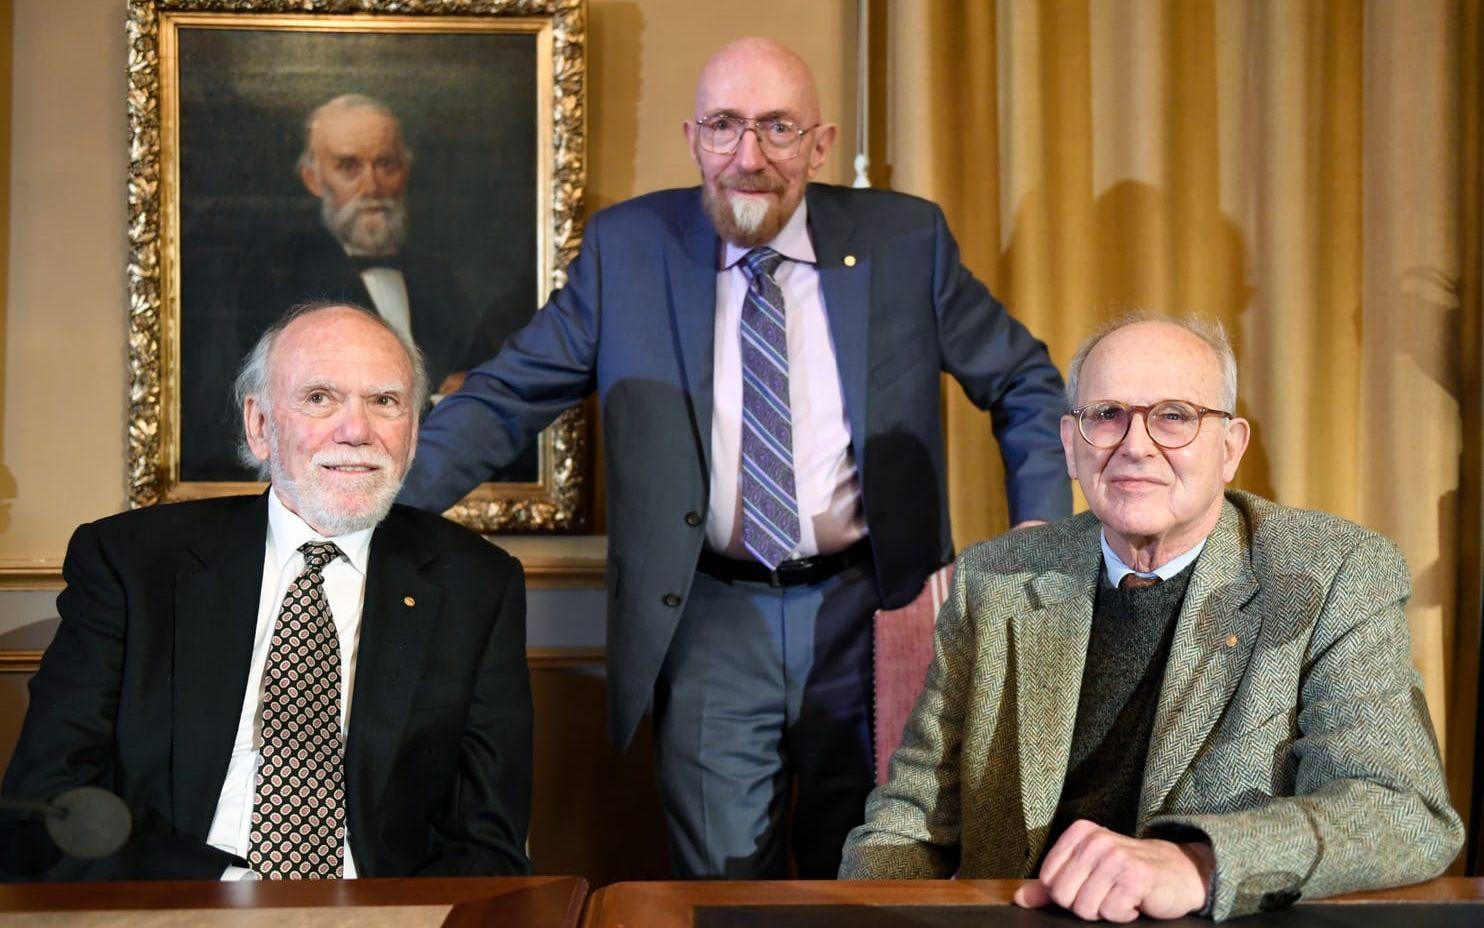 Barry Barish, Nobelpristagare i fysik, Kip Thorne, Nobelpristagare i fysik, Rainer Weiss, Nobelpristagare i fysik är i Stockholm för att ta emot priset. Bild: Pontus Lundahl